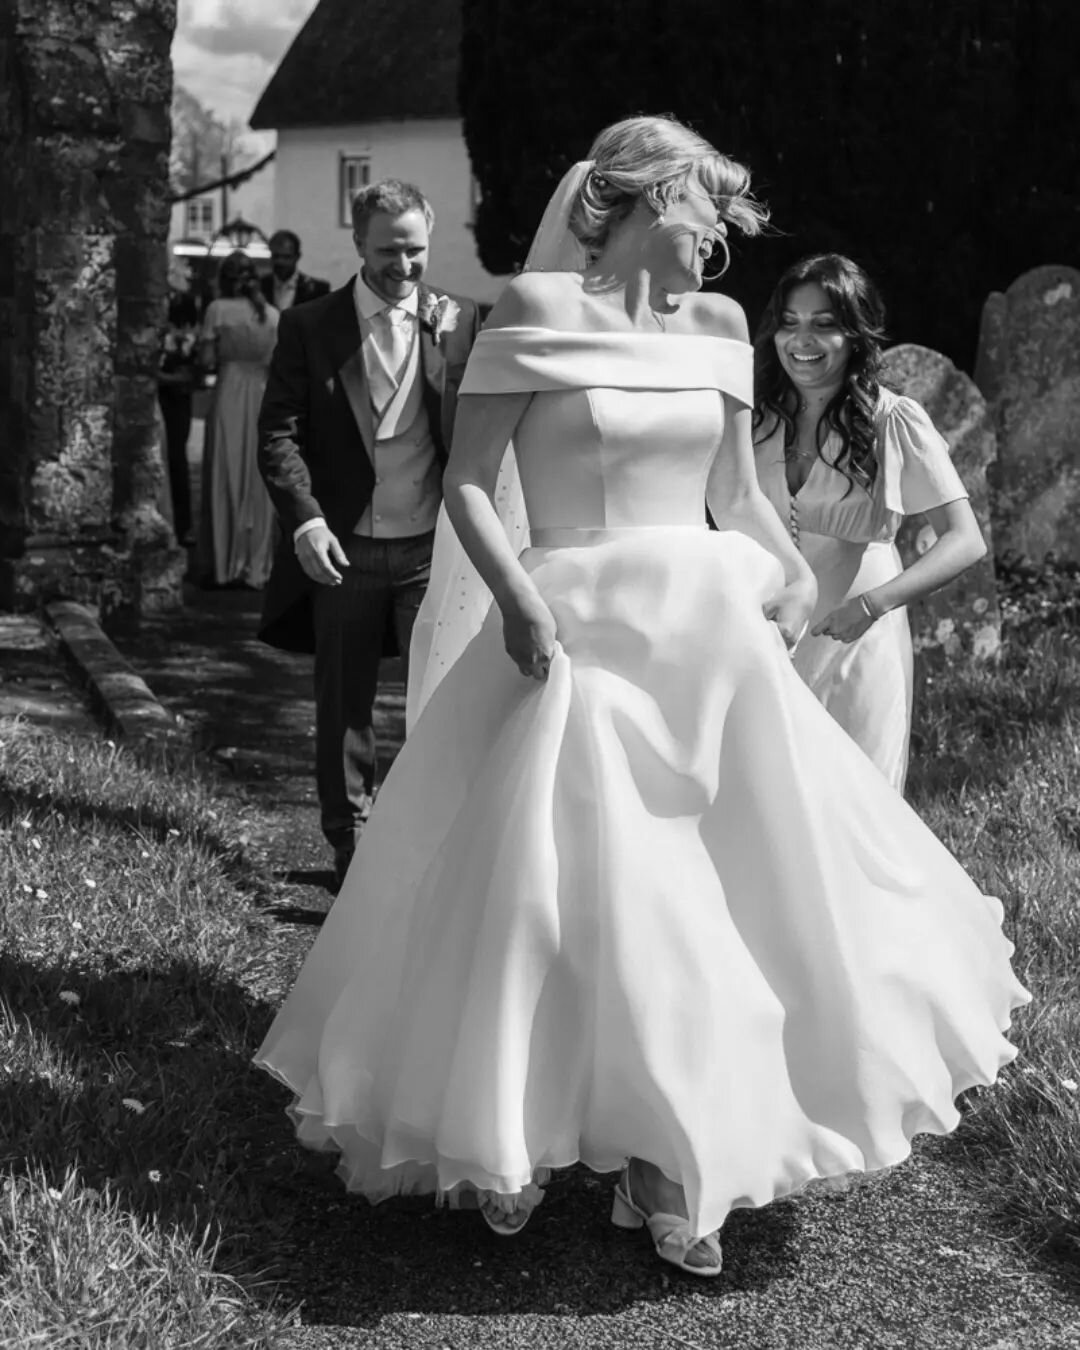 ✨ Elation ✨
This moment is everything! 

#weddingjoy #onceinalifetime #reportageweddingphotography